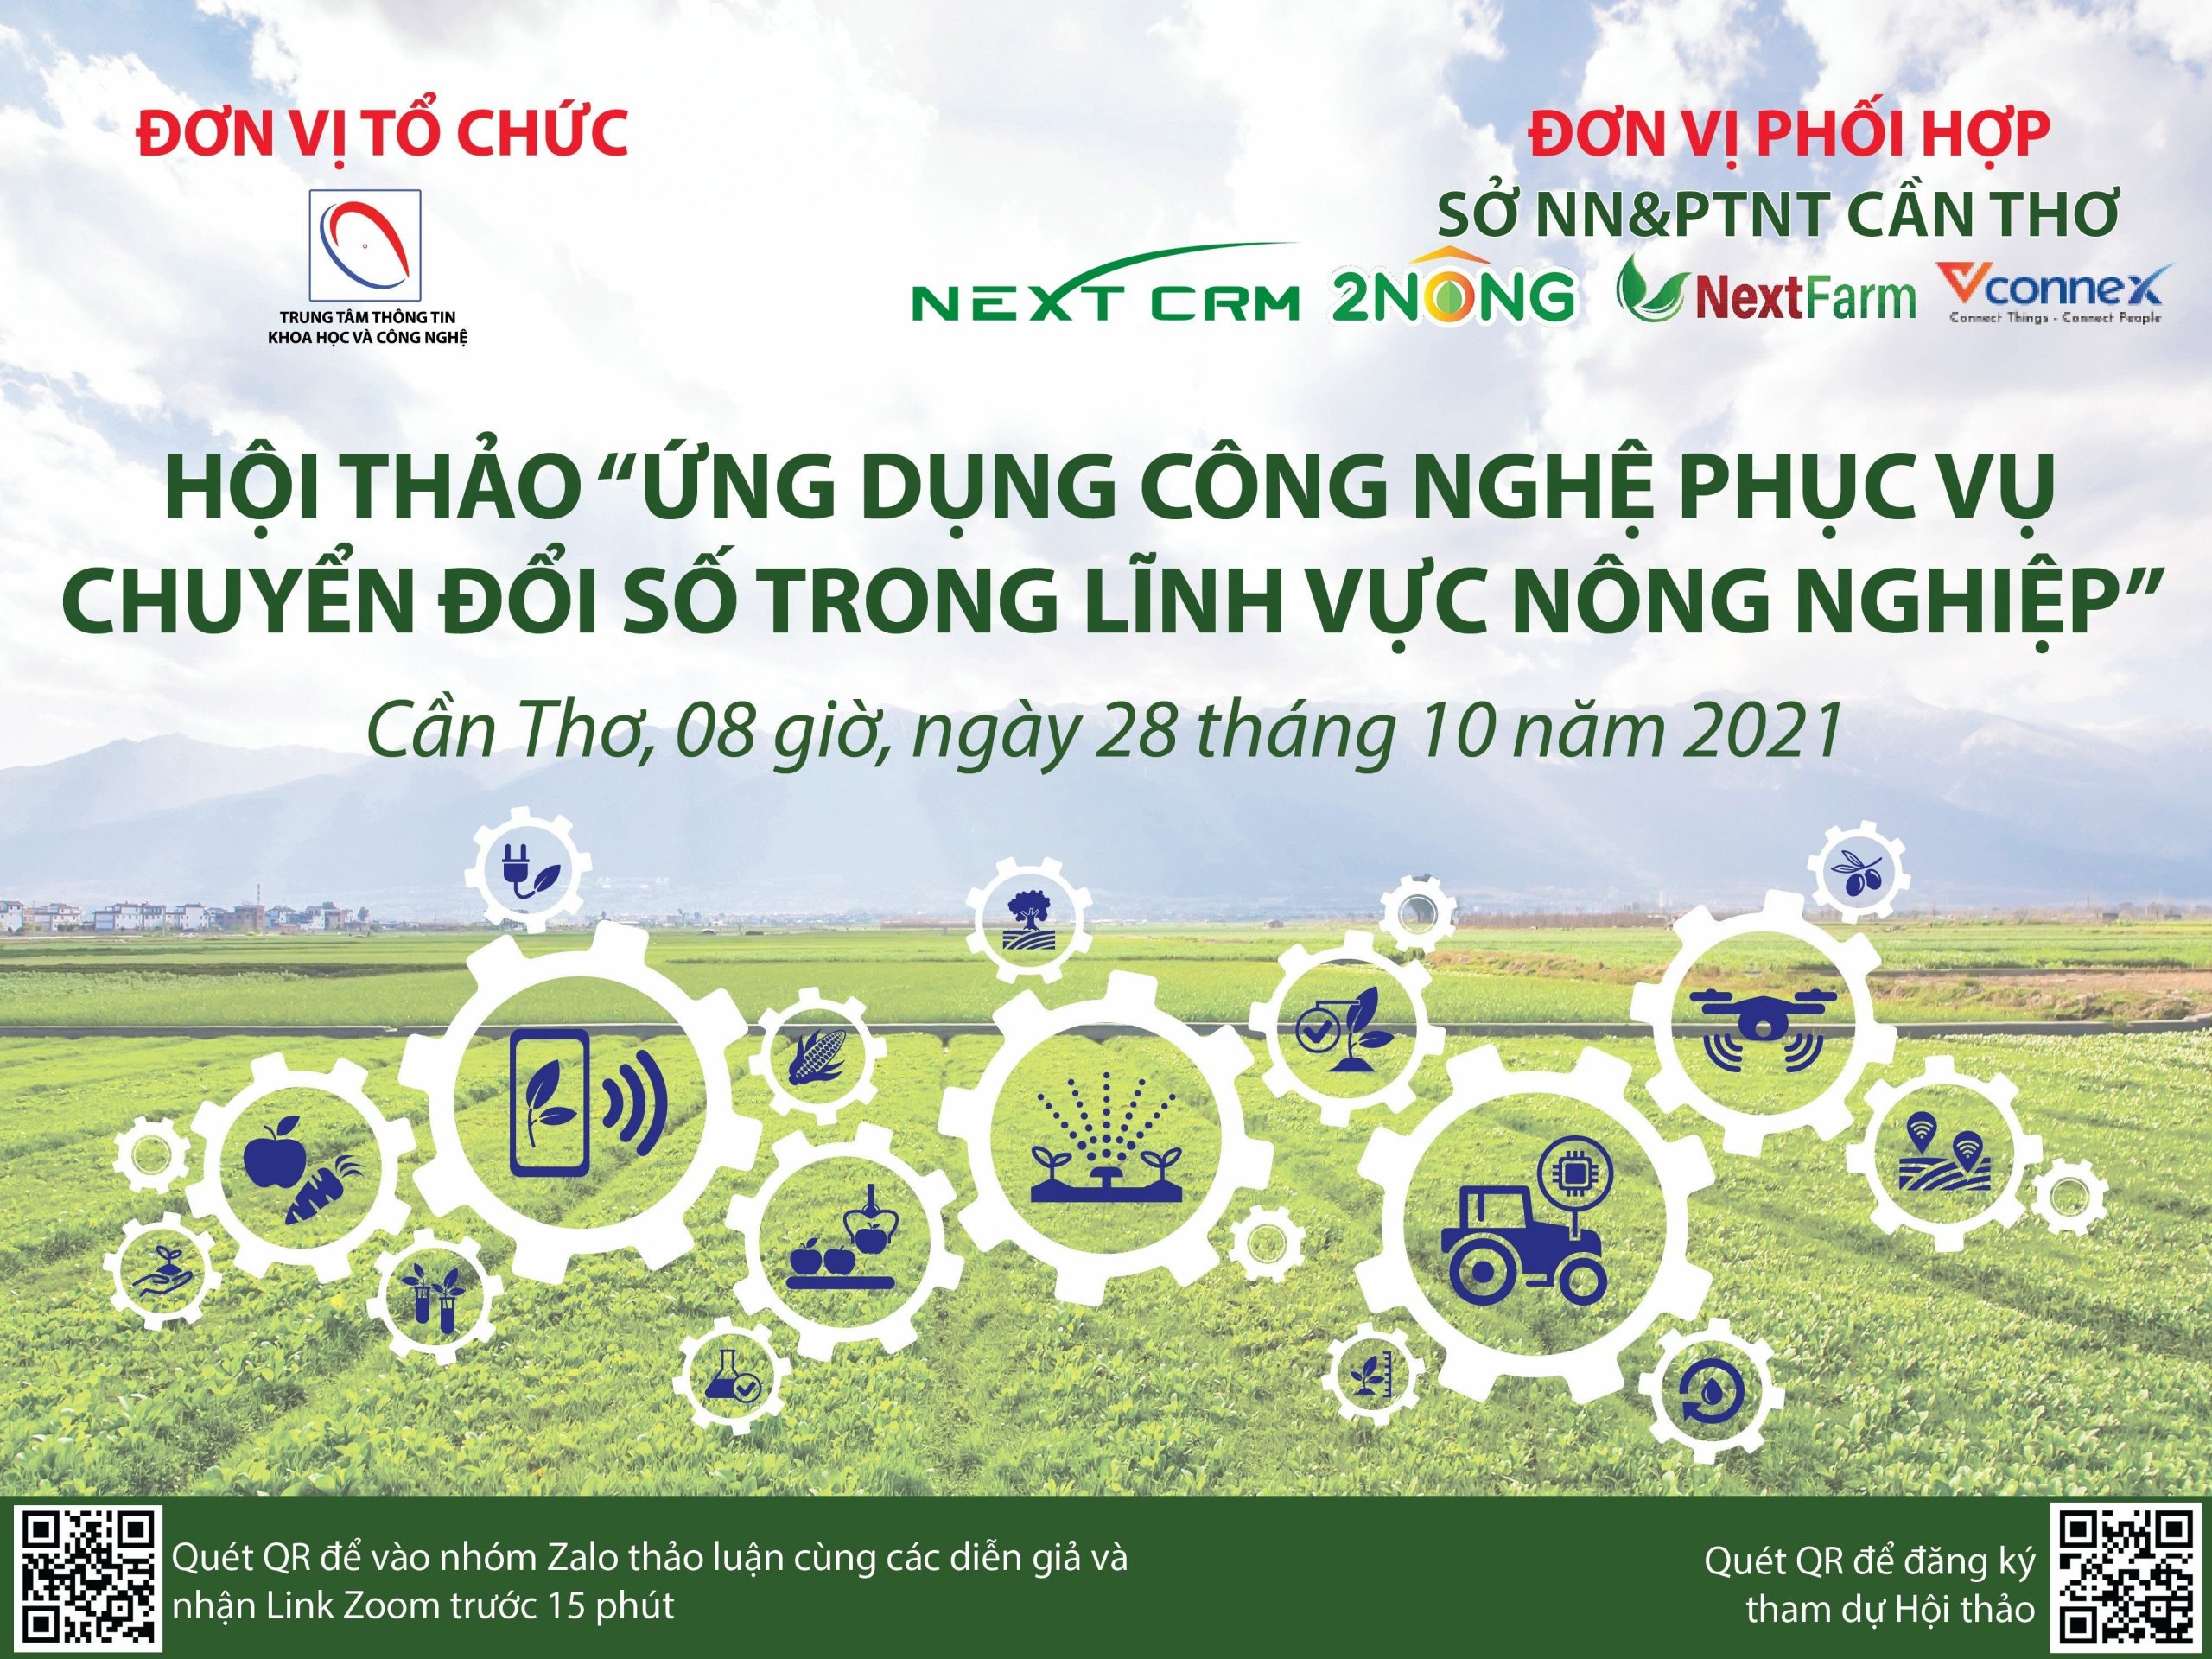 NextCRM phối hợp với sở KH&CN Cần Thơ “Số hóa nông nghiệp”